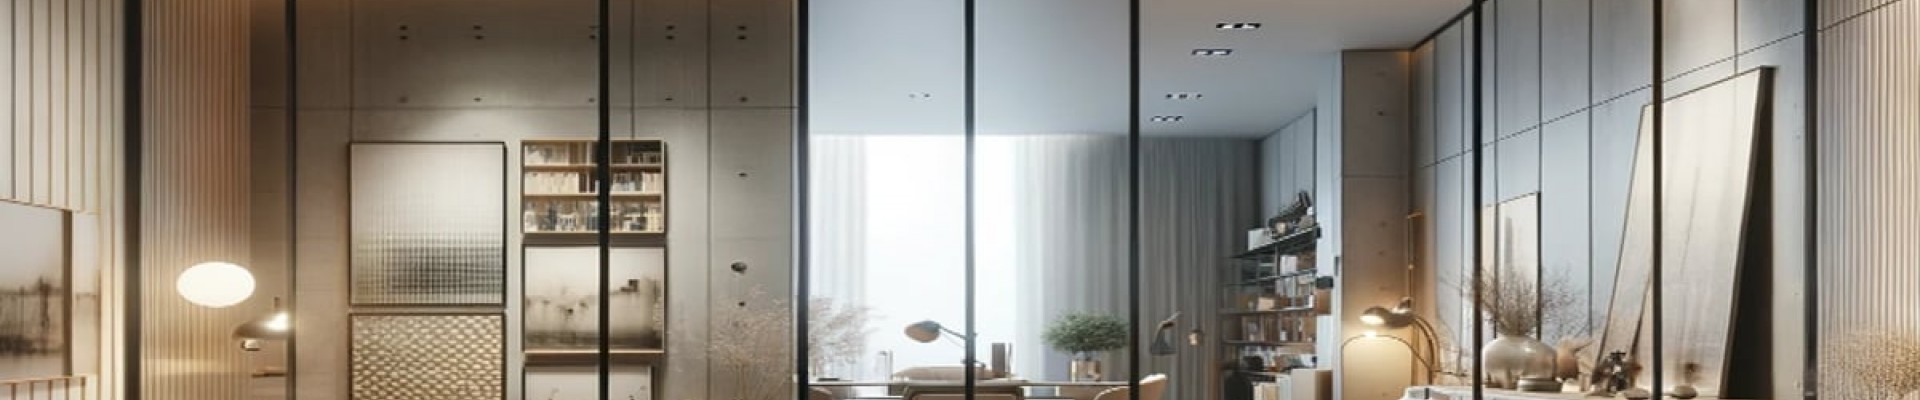 Алюмінієві двері та перегородки від Elegante: Ідеальне поєднання стилю, функціональності та якості